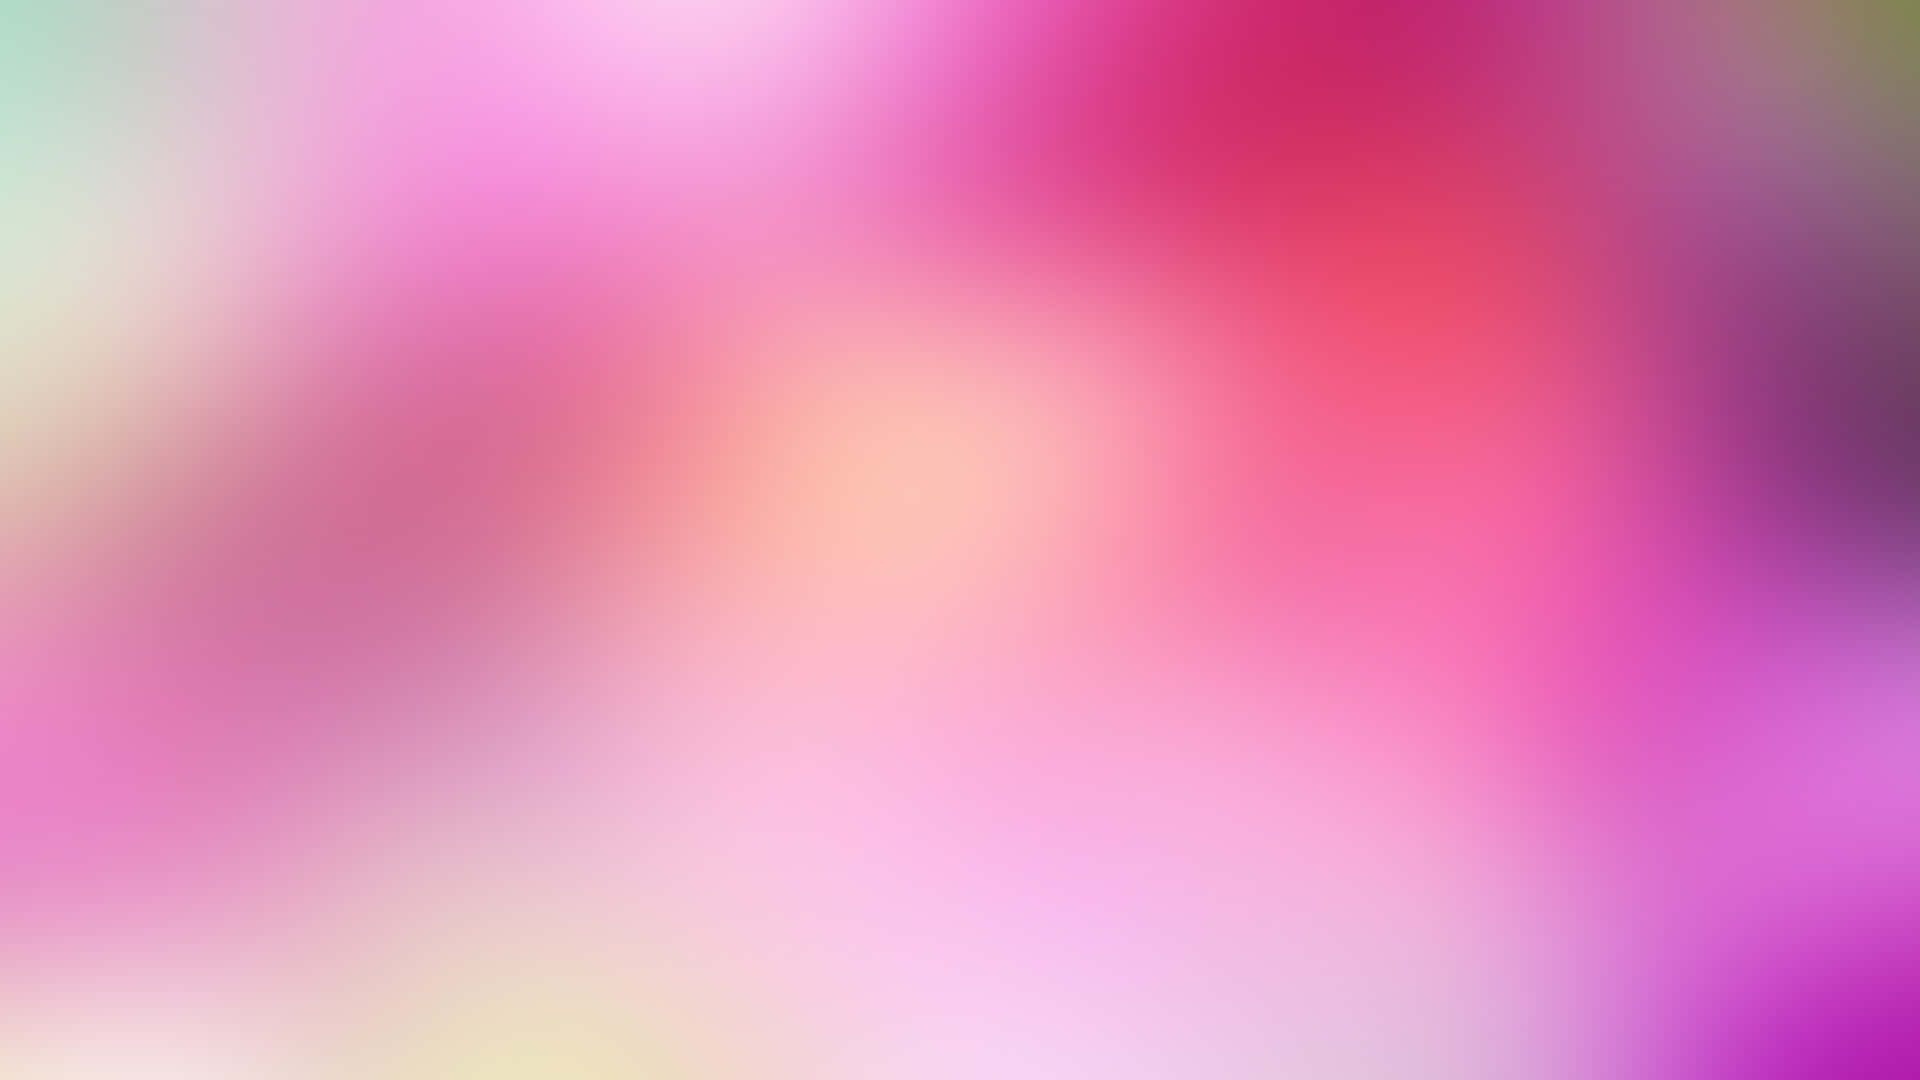 Et uskarpt baggrundsbillede med pink og lilla farver Wallpaper